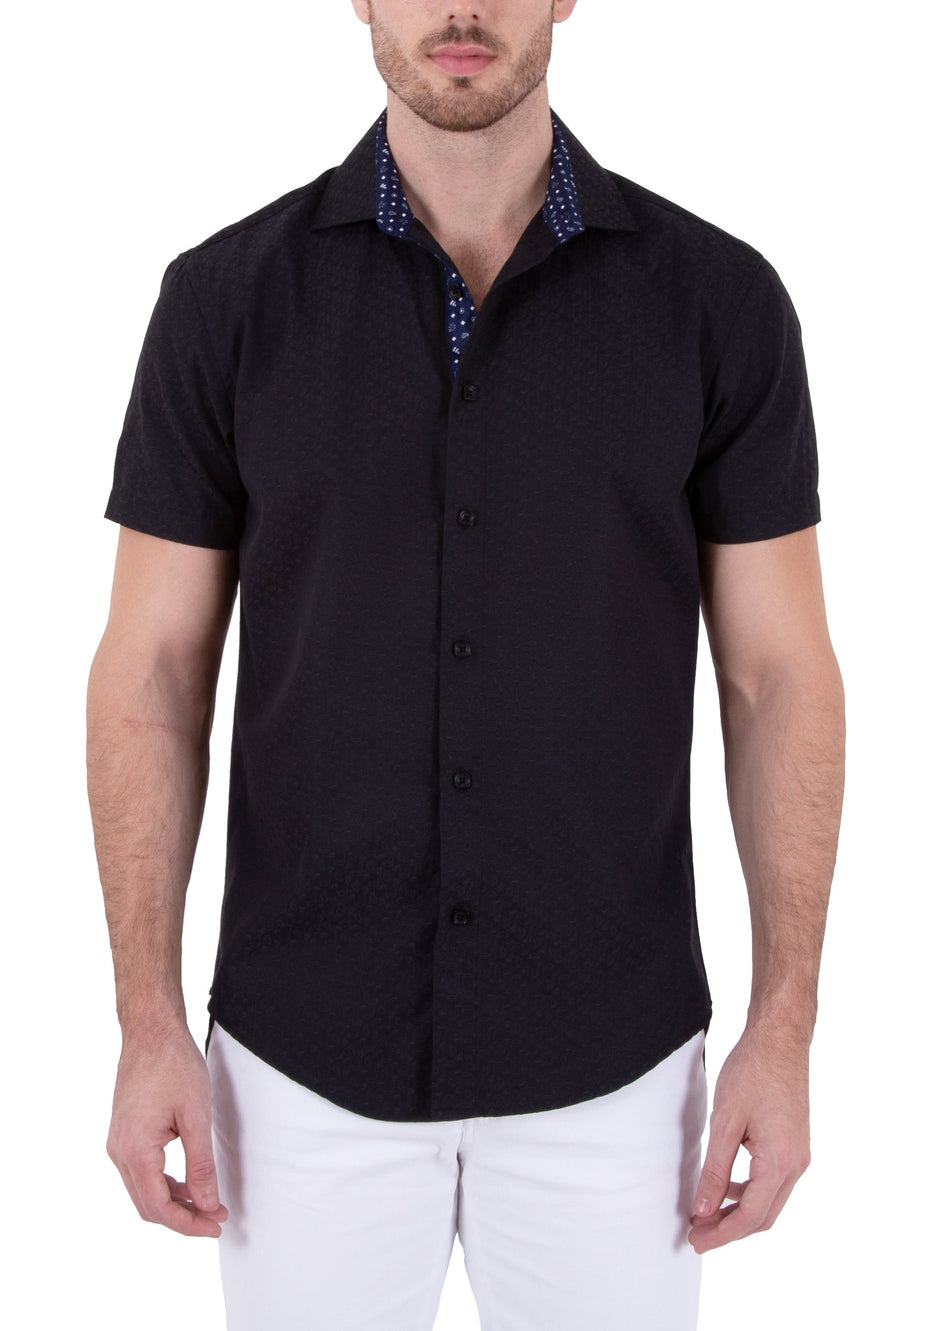 Black Microprint Textured Short Sleeve Dress Shirt